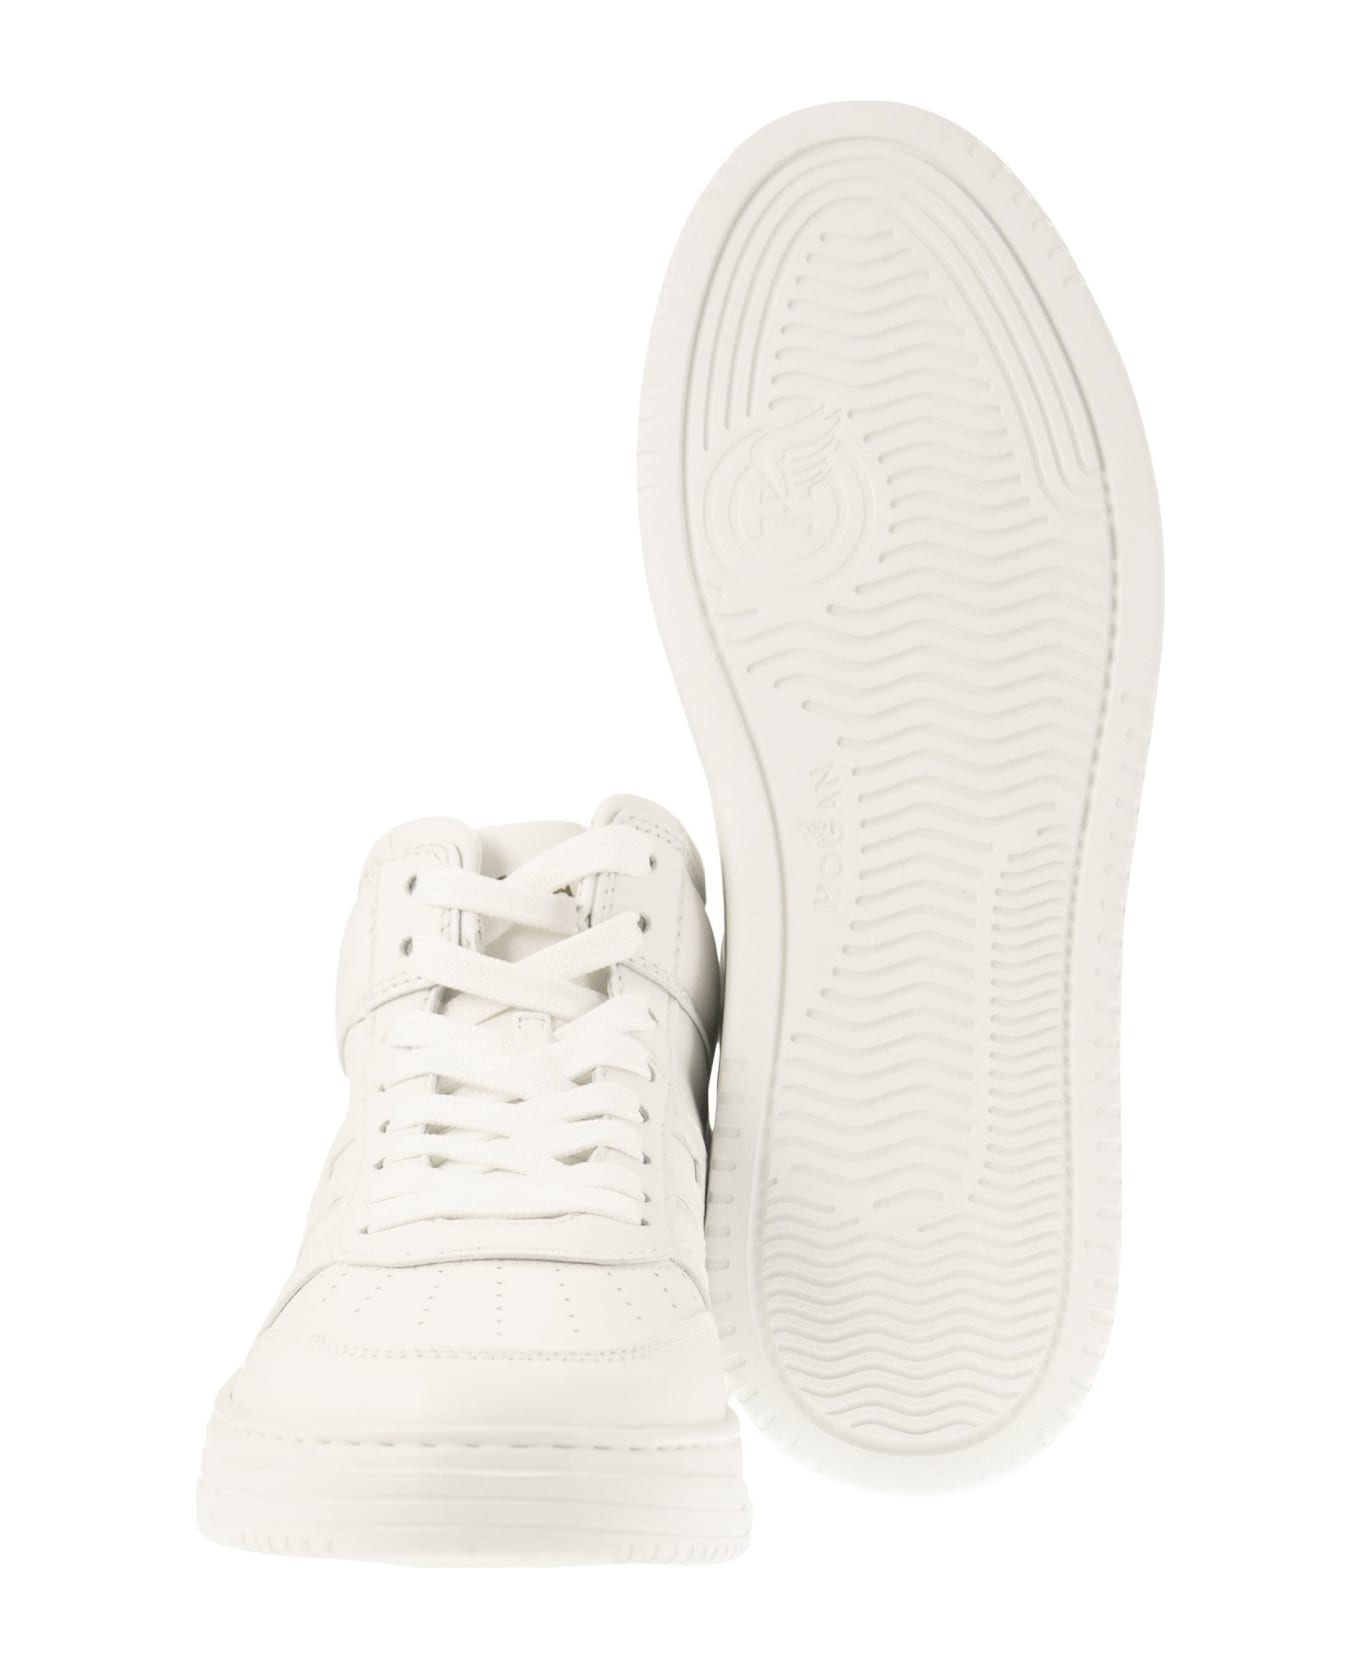 Hogan Sneakers H630 - White スニーカー